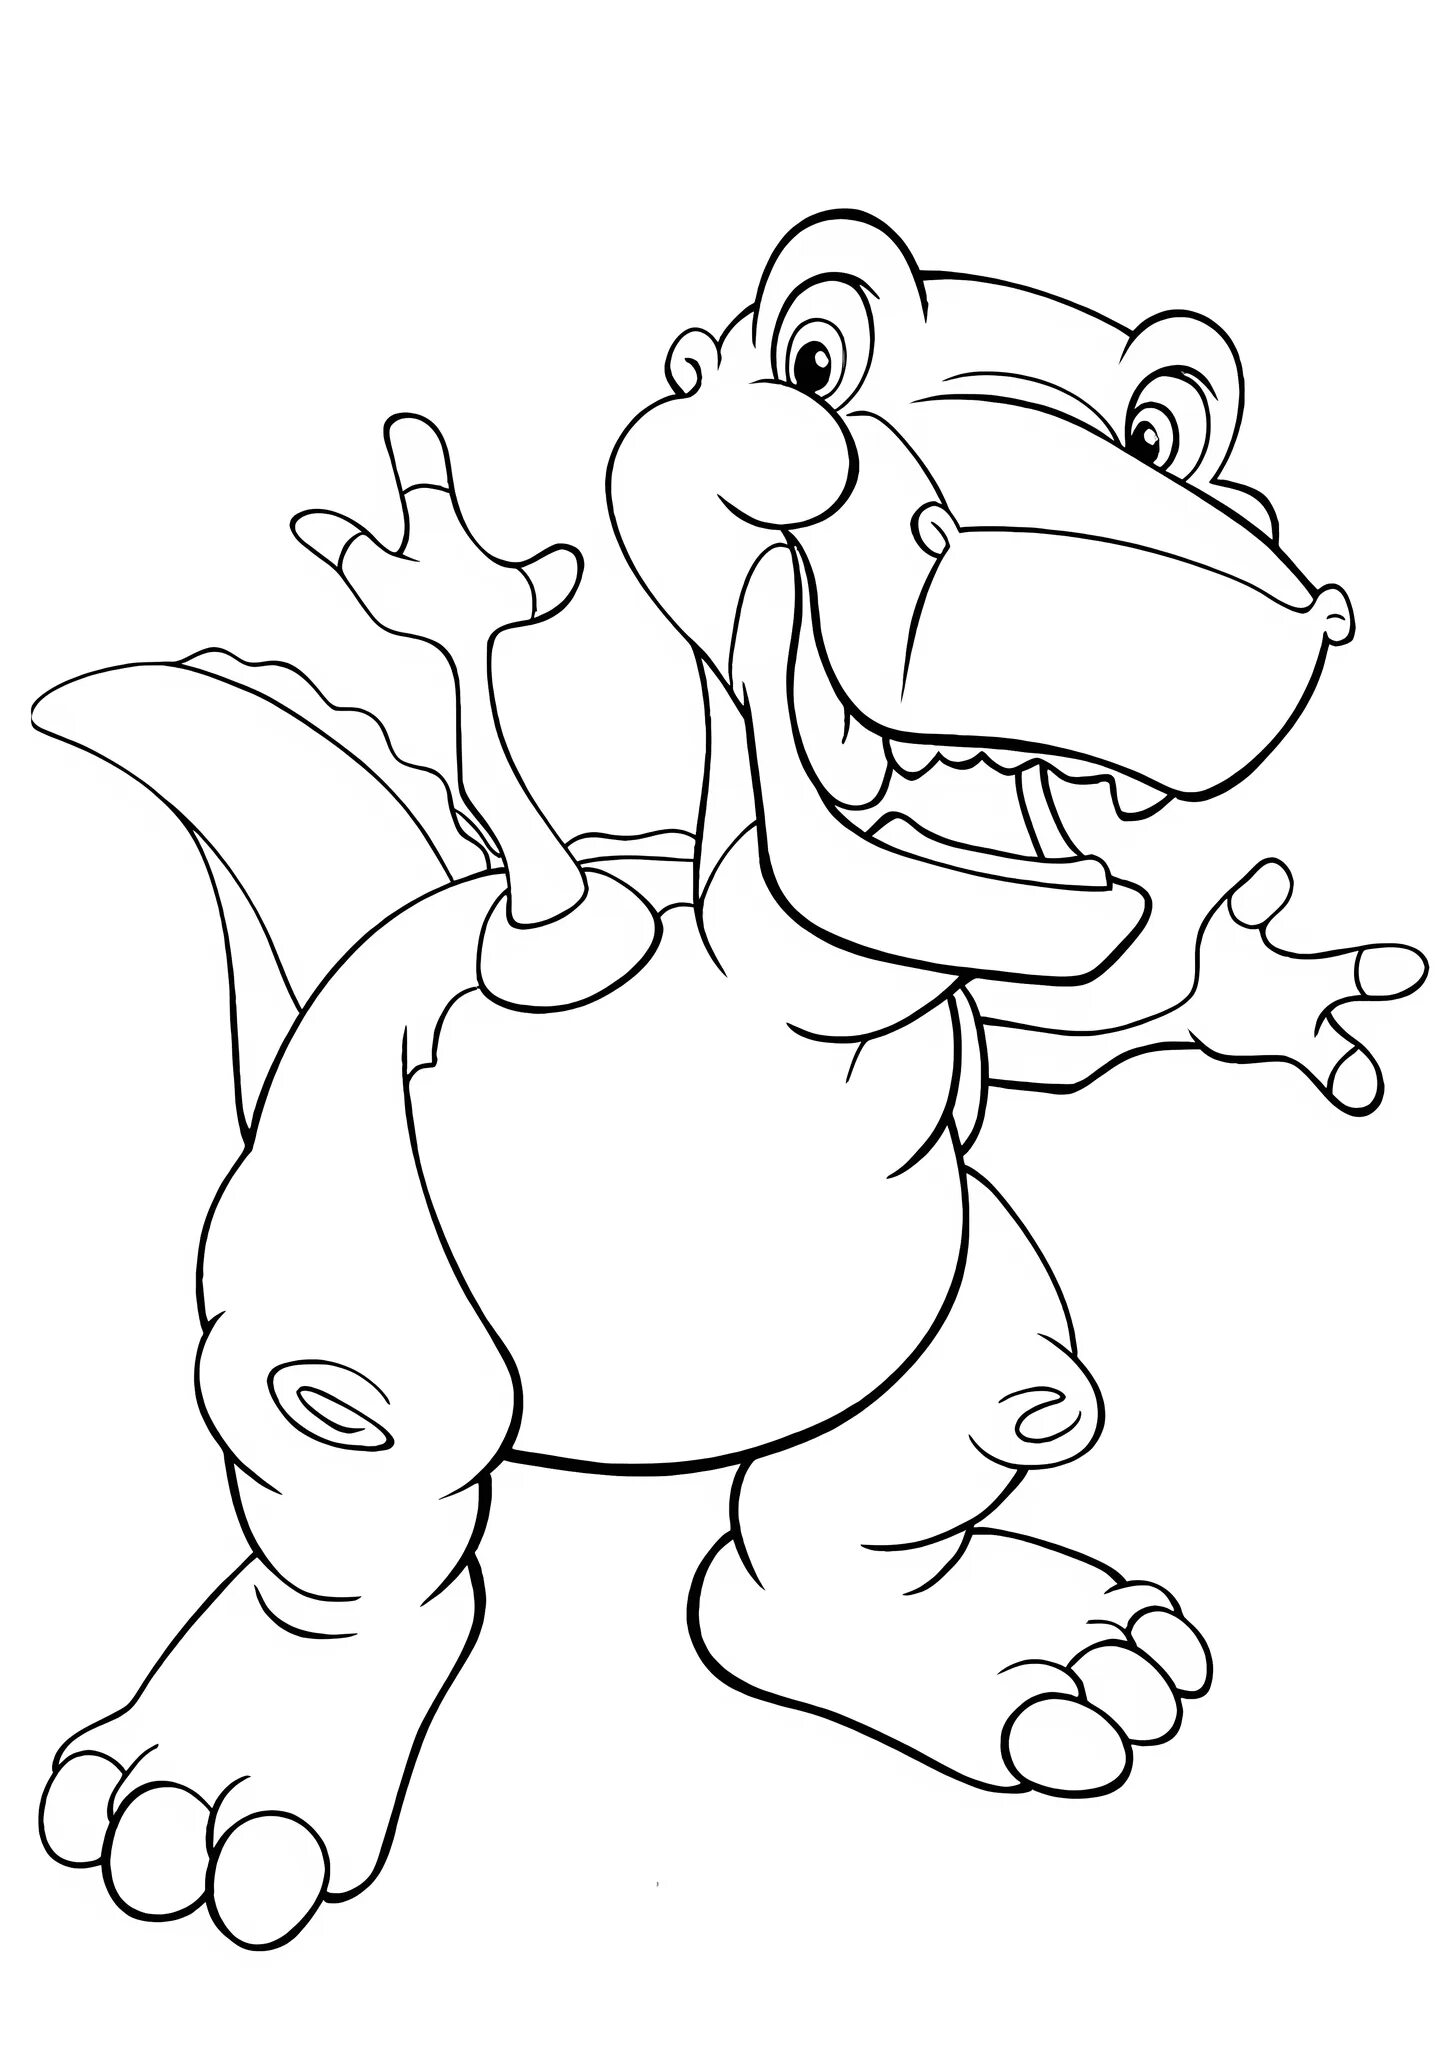 Раскраска динозавр формат а4. Динозавры / раскраска. Динозавр раскраска для детей. Раскраска "Динозаврики". Рисунок динозавра для раскрашивания.